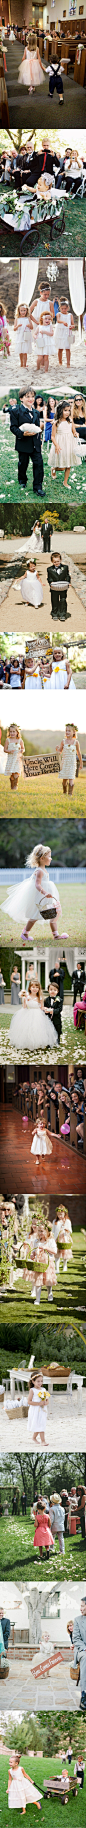 #婚礼布置#那些花童们创意的婚礼出场方式 更多: http://www.lovewith.me/share/detail/all/33382